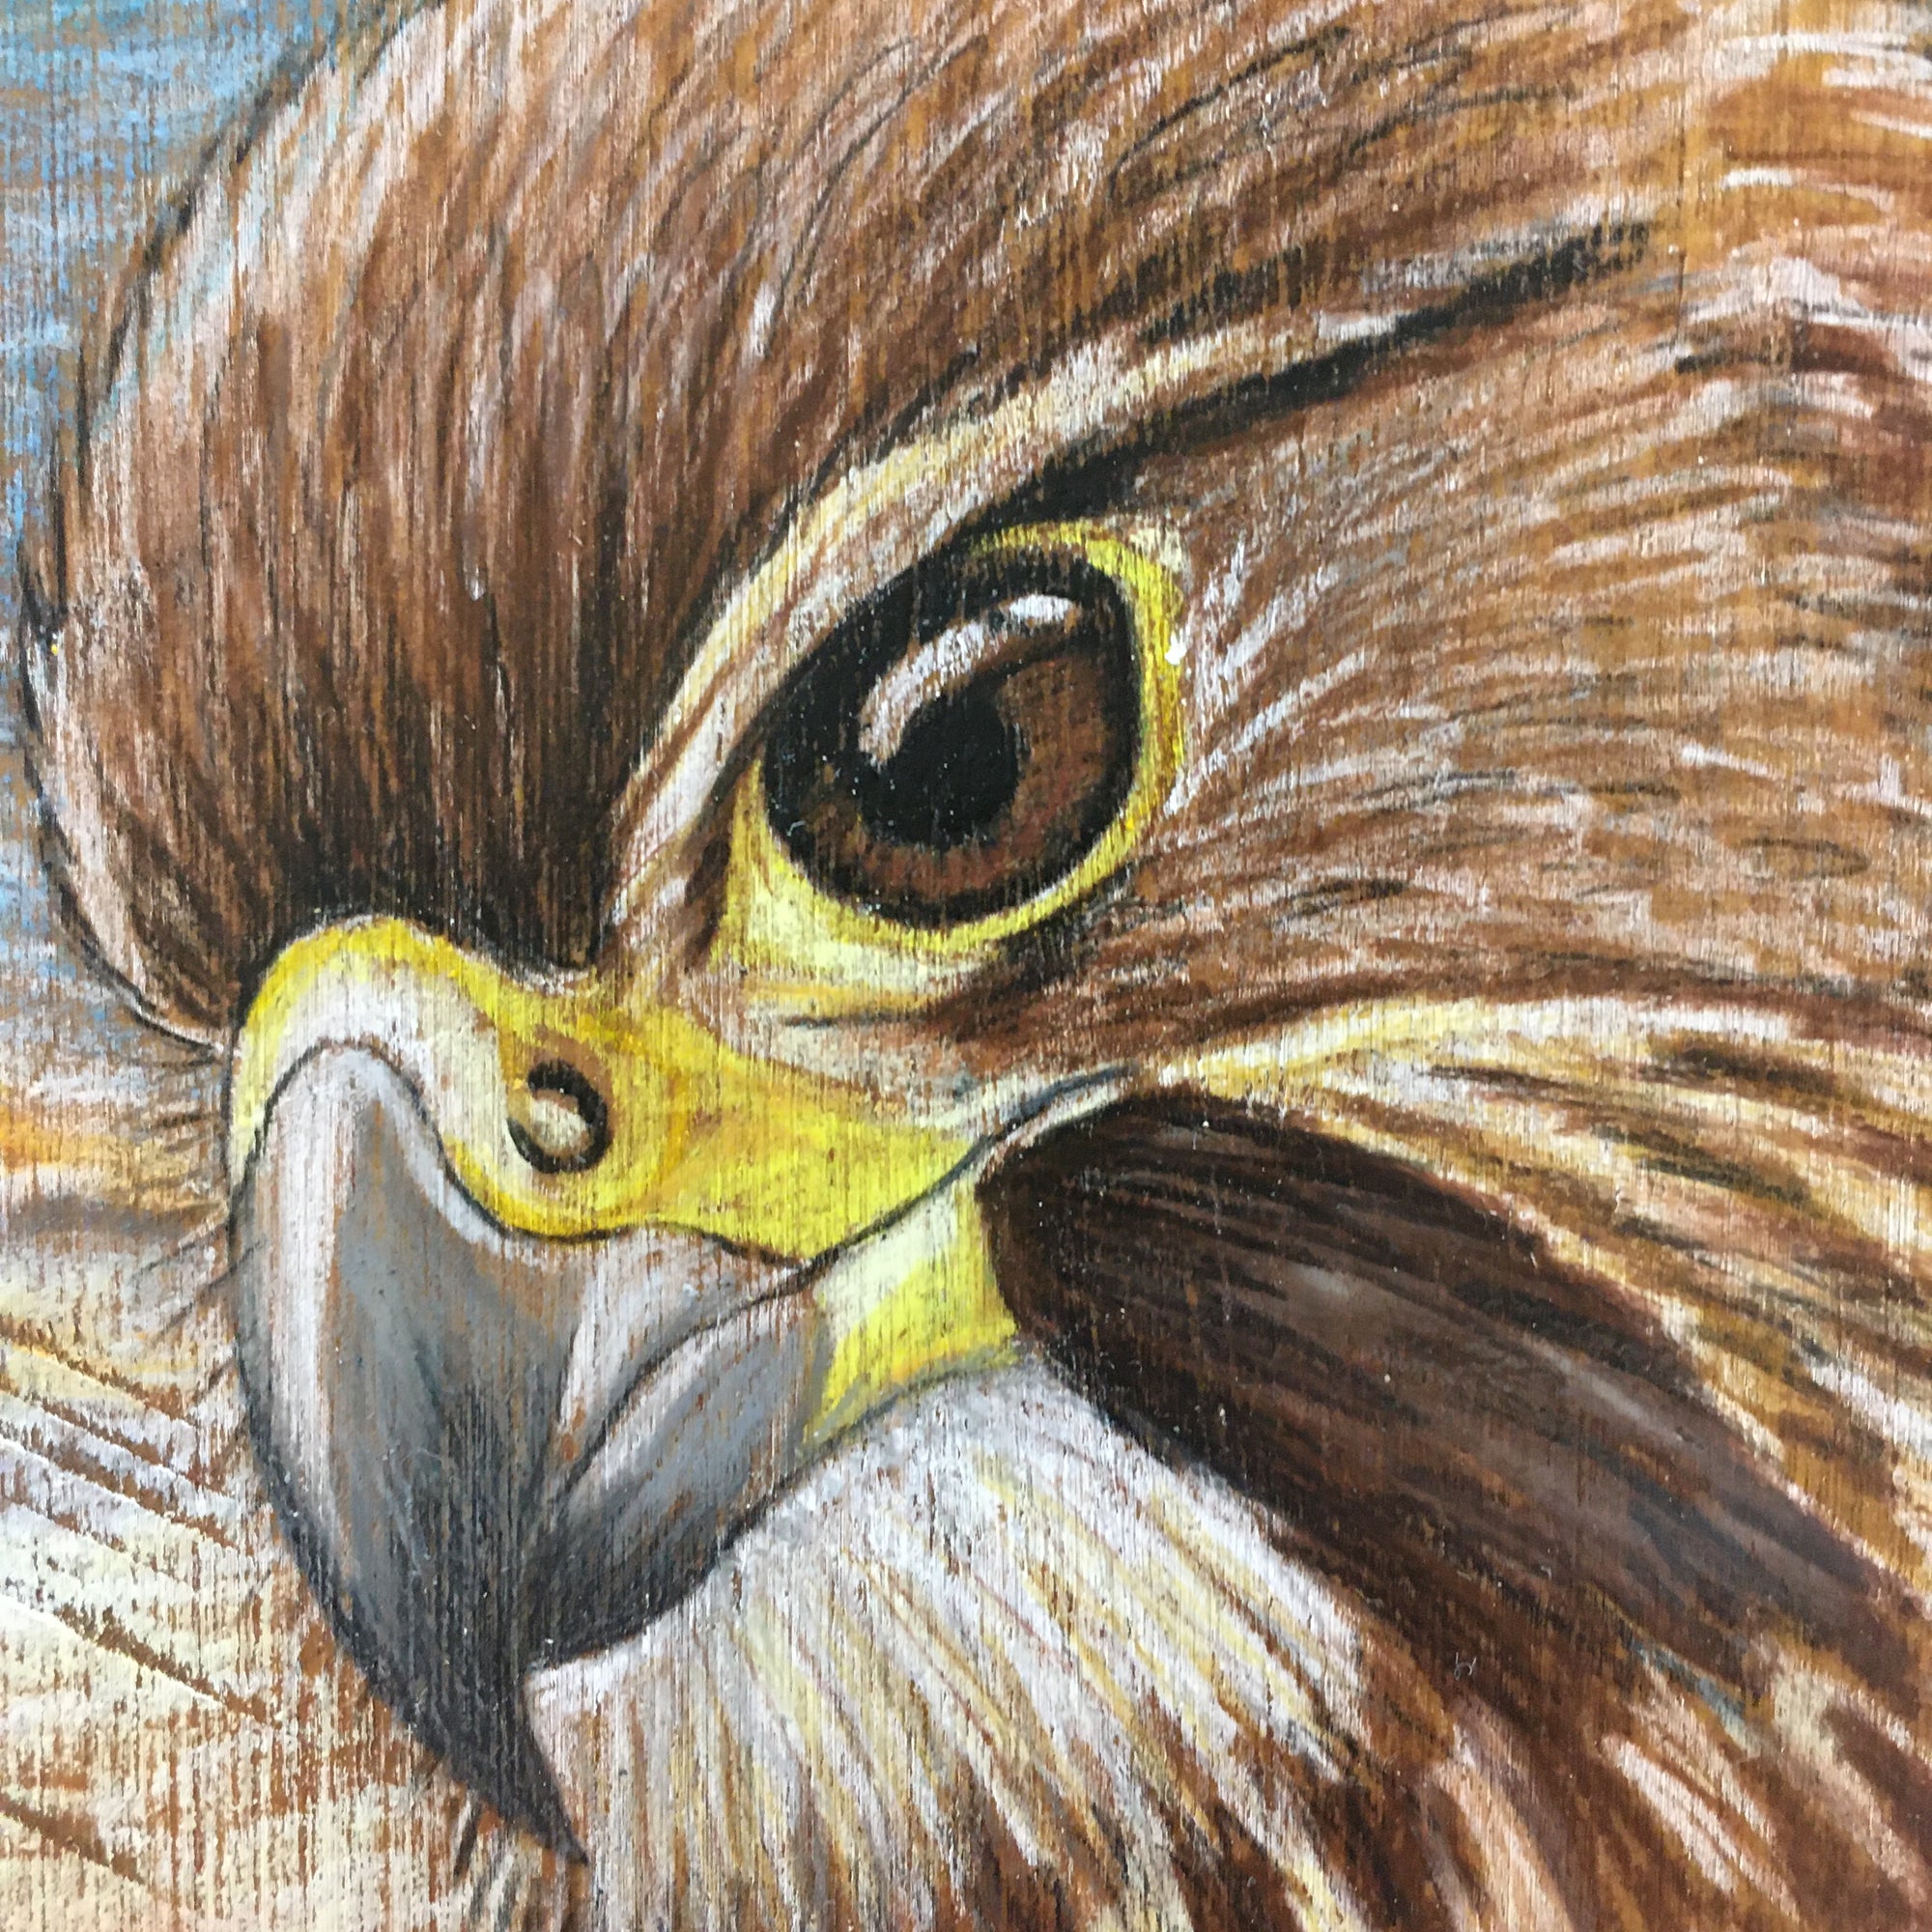 Kārearea (NZ Falcon) Block Drawing